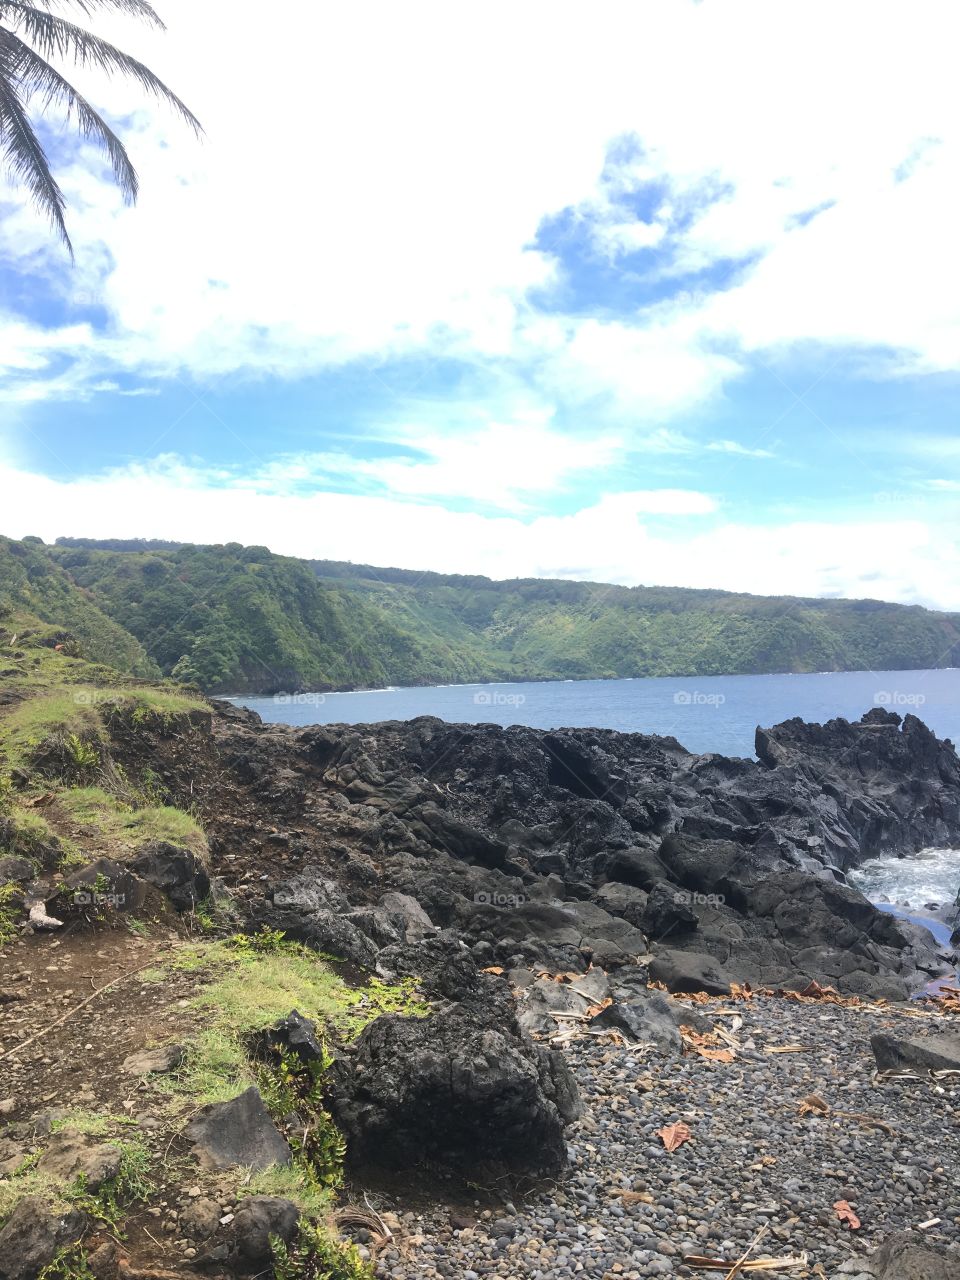 Coastline of Maui